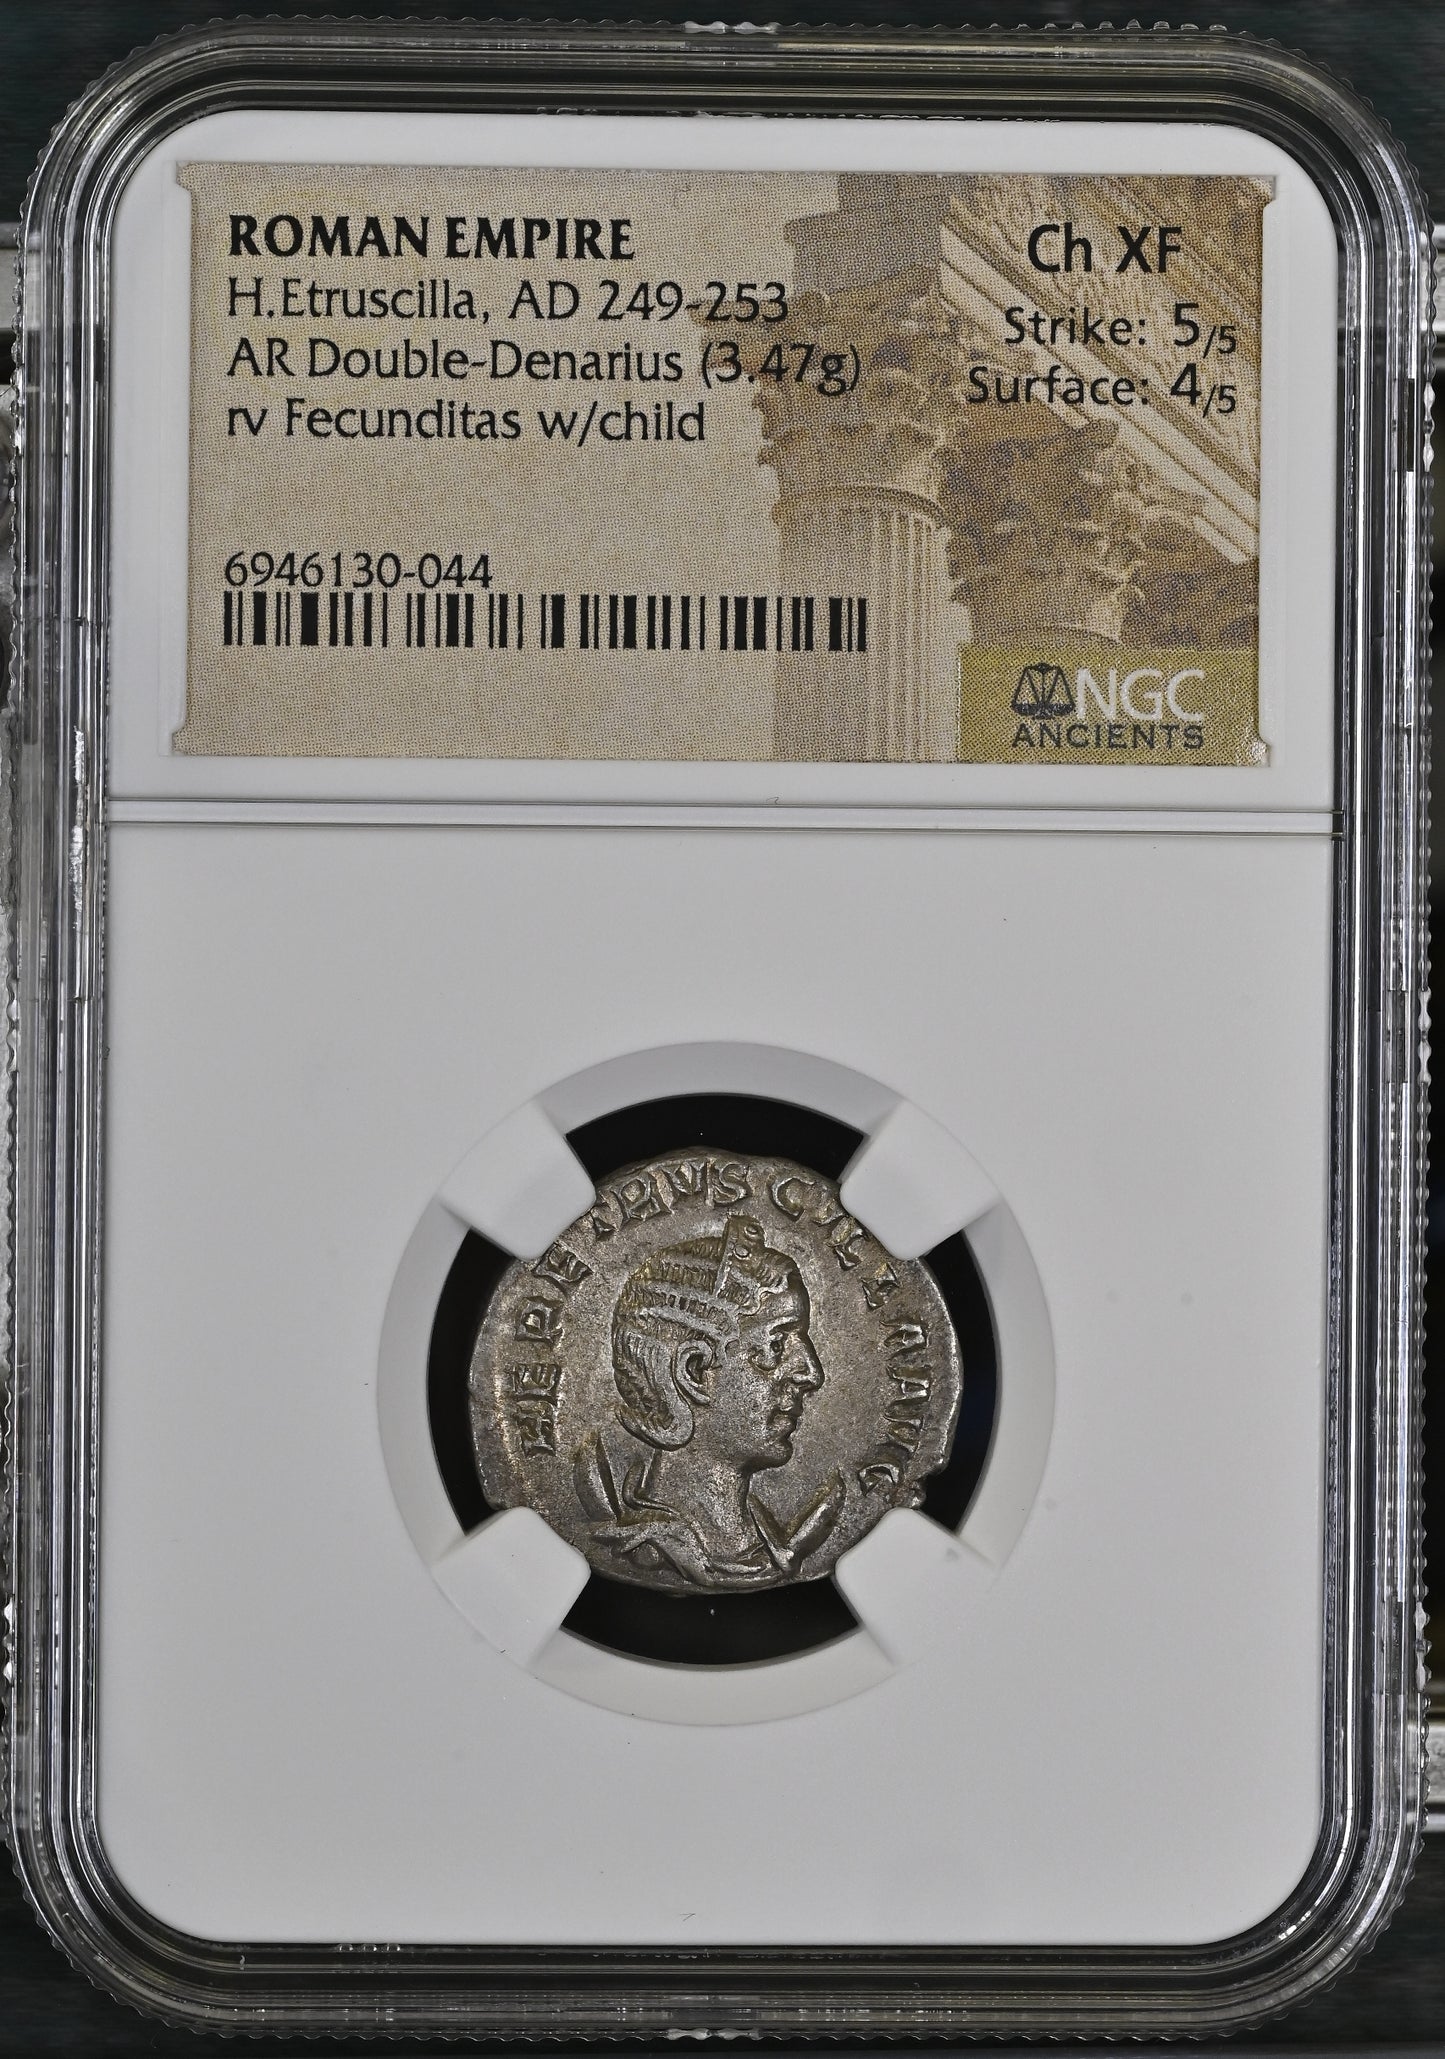 Roman Empire - Herennia Etruscilla - Silver Double-Denarius - NGC Ch XF - RIC:55b